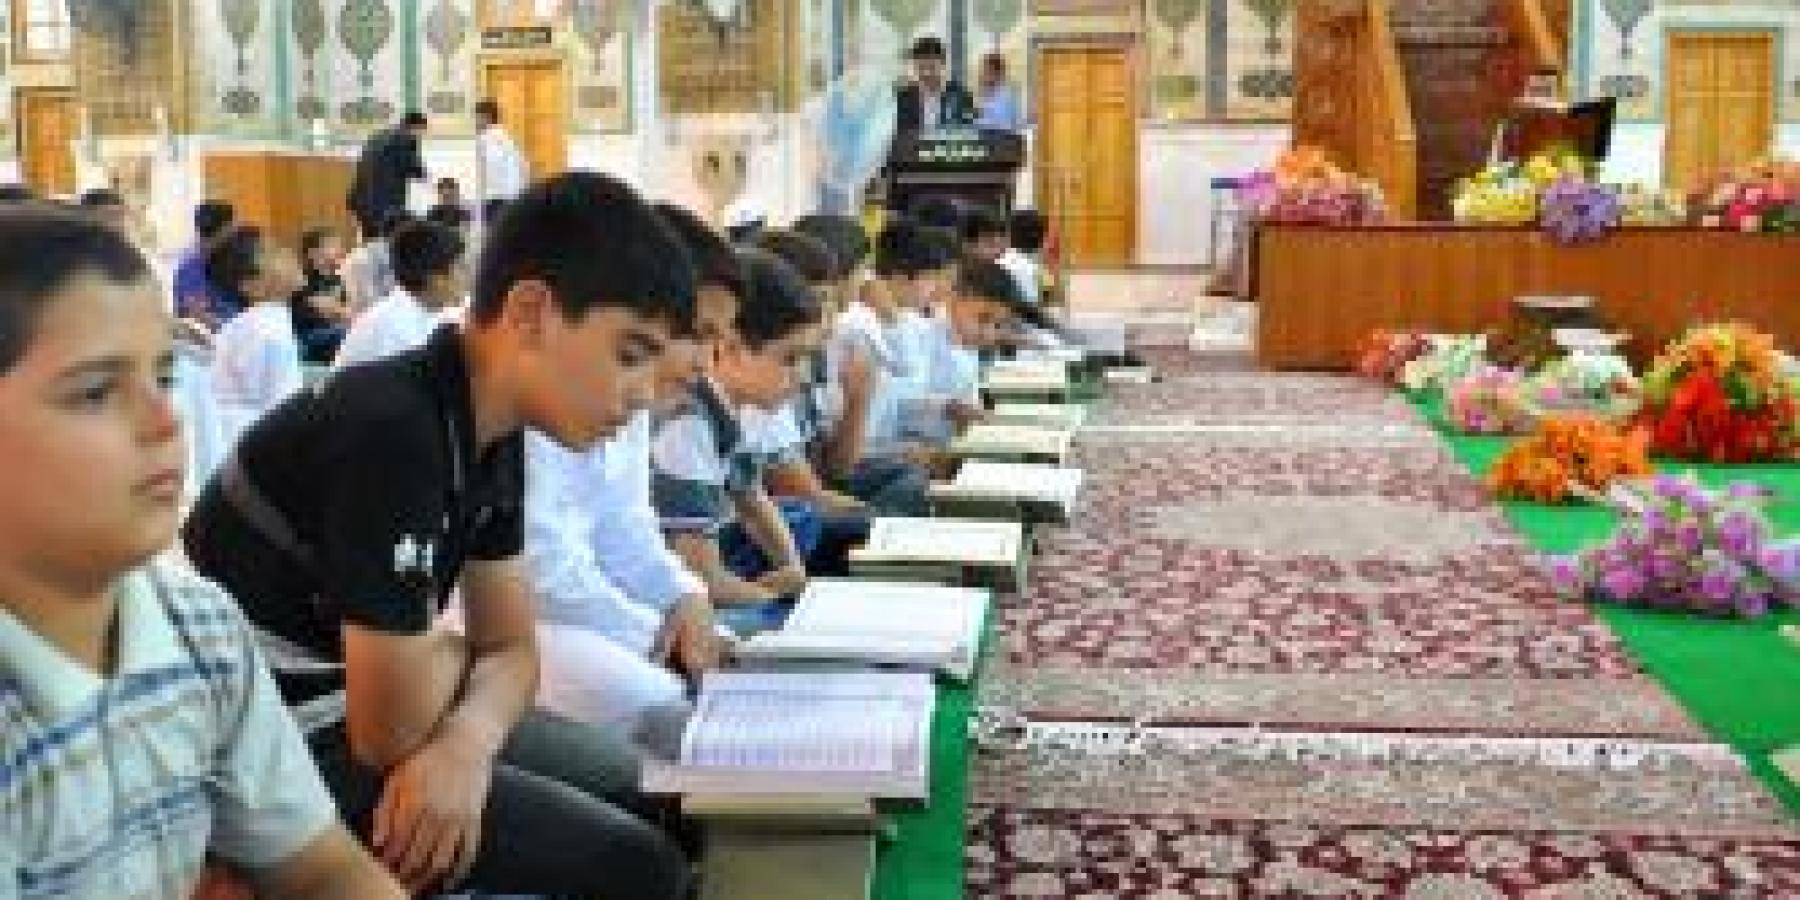 وحدة التعليم القرآن في العتبة العلوية المقدسة تُقيمُ محفلاً قرأنياً احتفاءً بتخرج دفعة جديدة من طلبتها